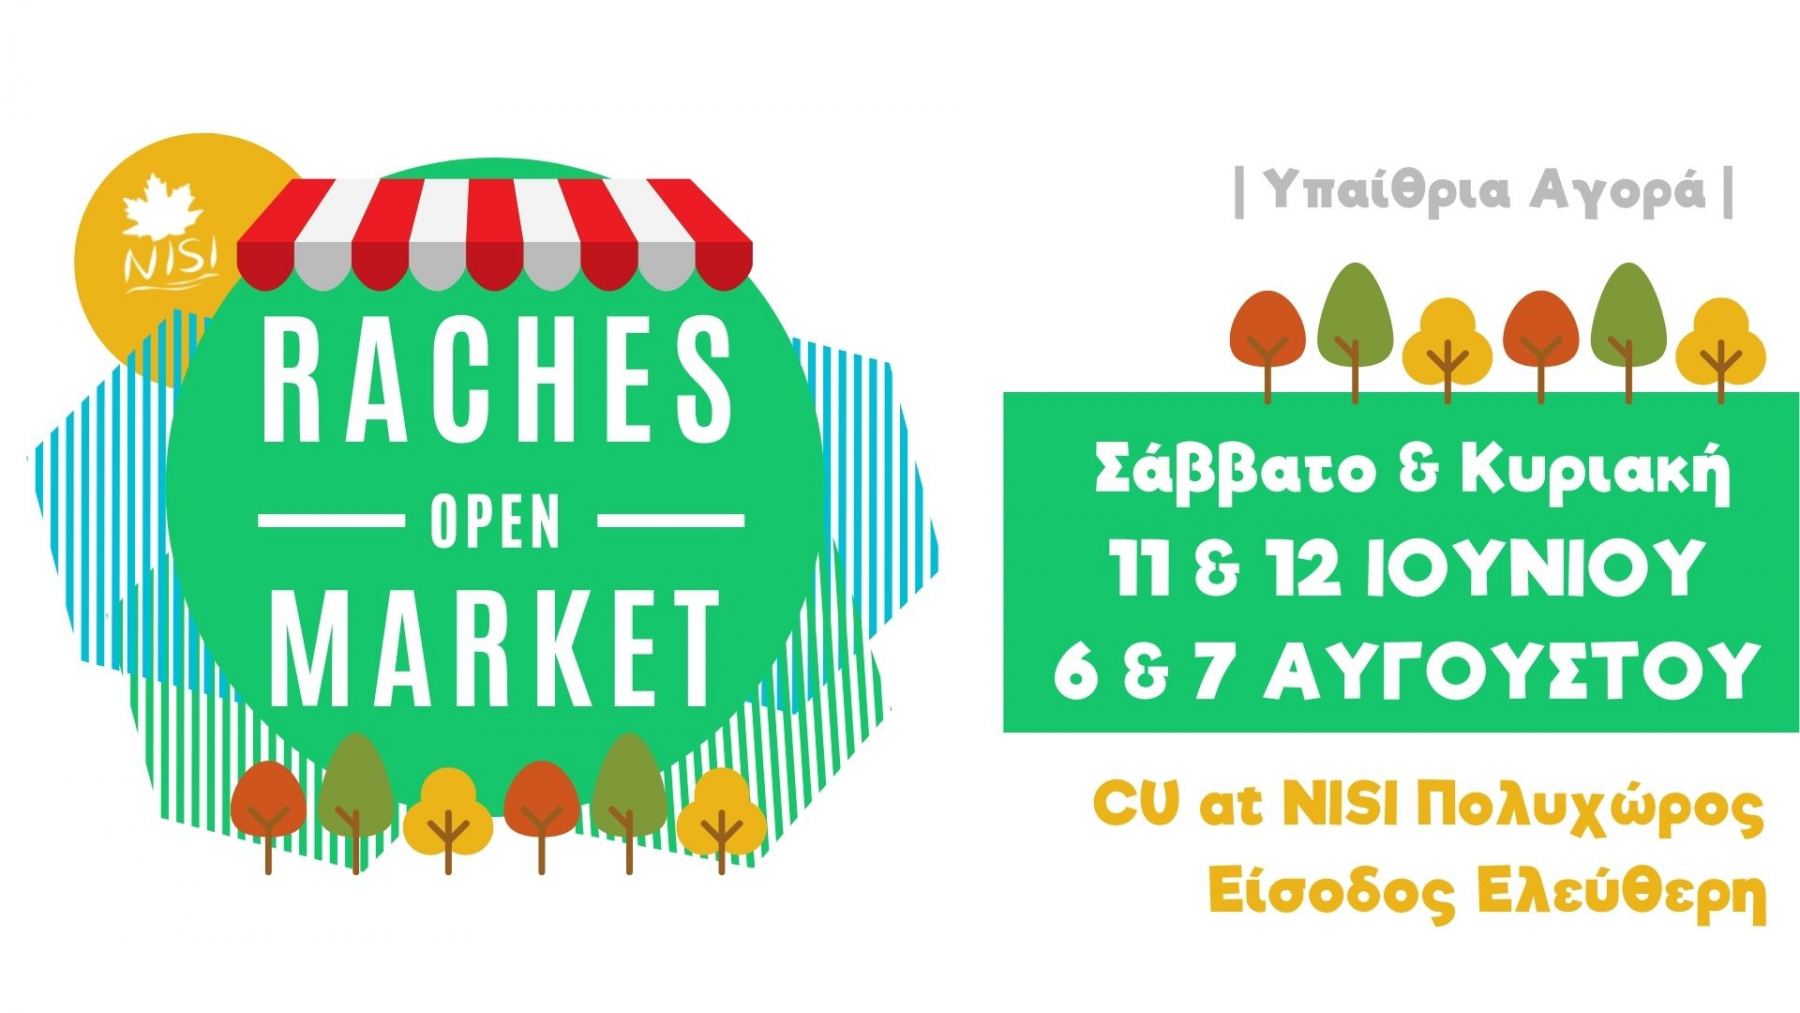 Πάρτε μέρος στις υπαίθριες αγορές στο NISI Πολυχώρος στις Ράχες με χειροποίητα προϊόντα!